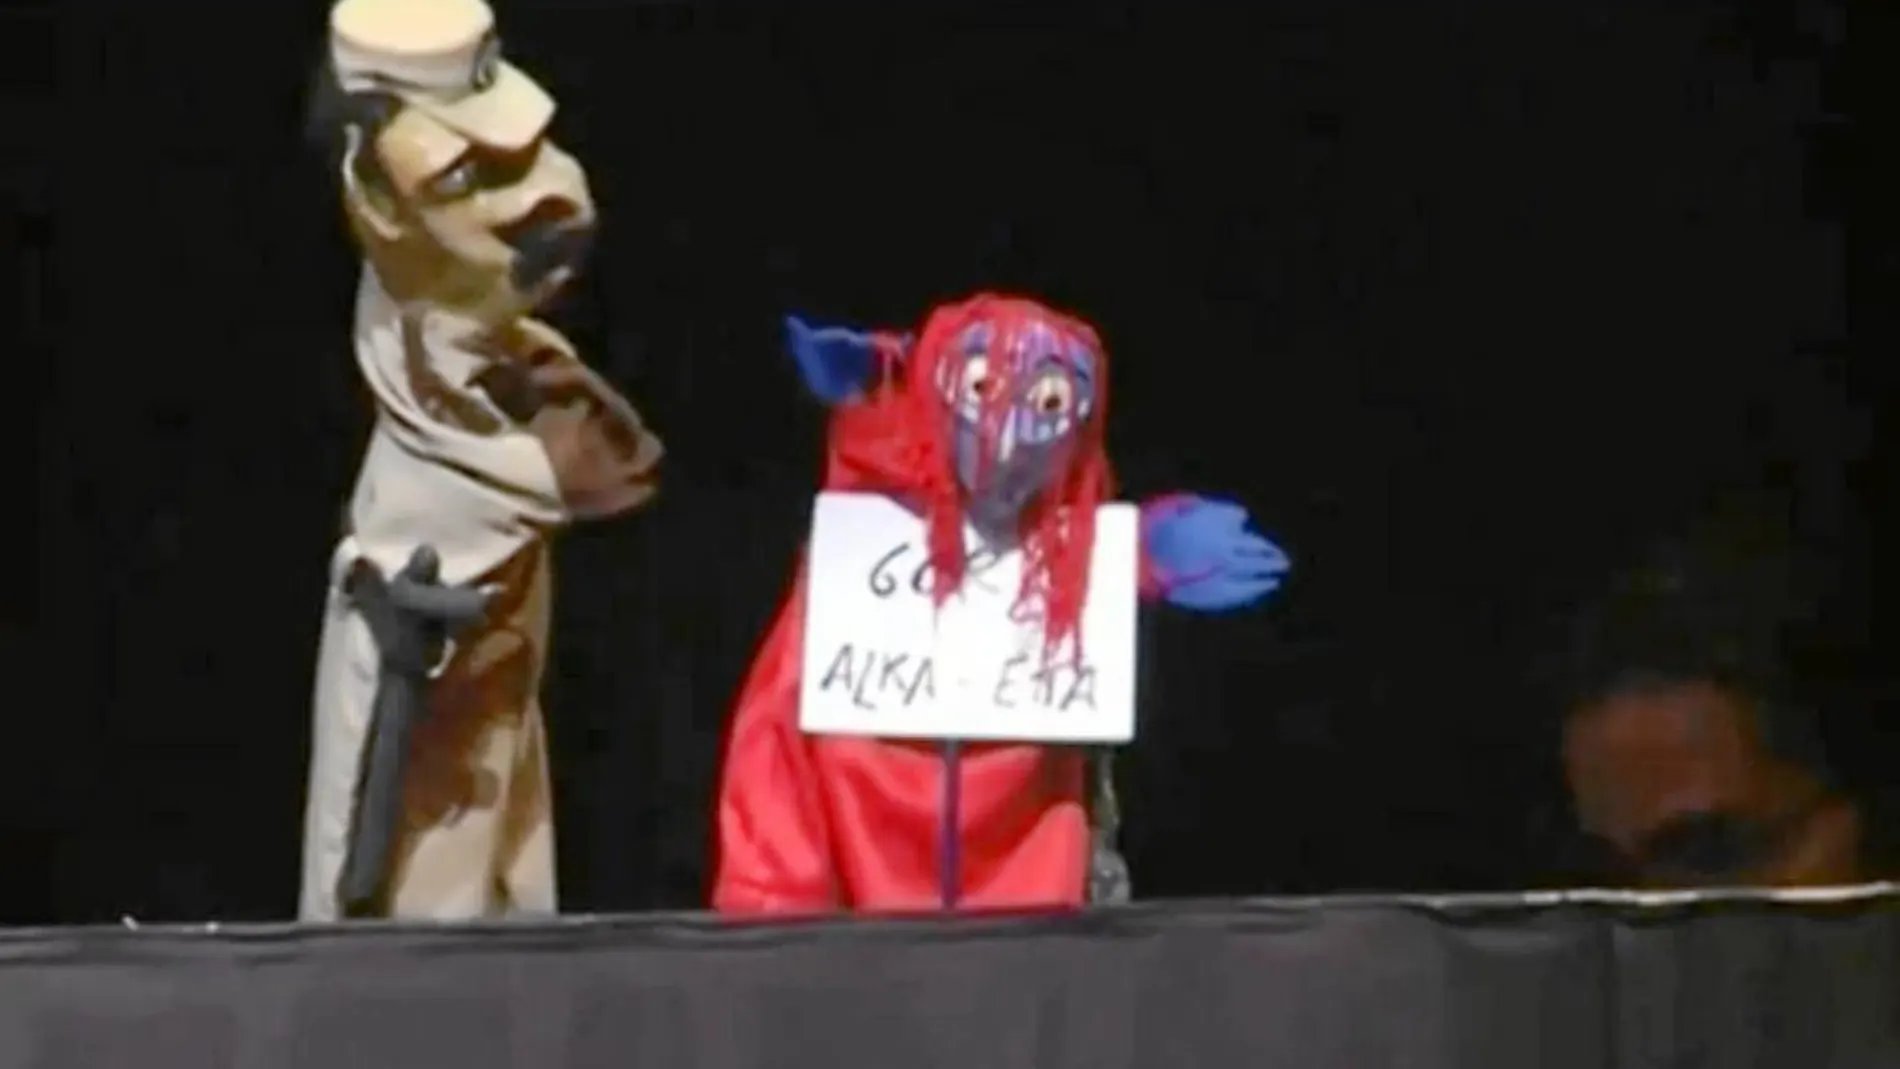 Momento del montaje de «La Bruja y Don Cristóbal» en el que se muestra el cartel con el lema «Gora Alka-ETA»